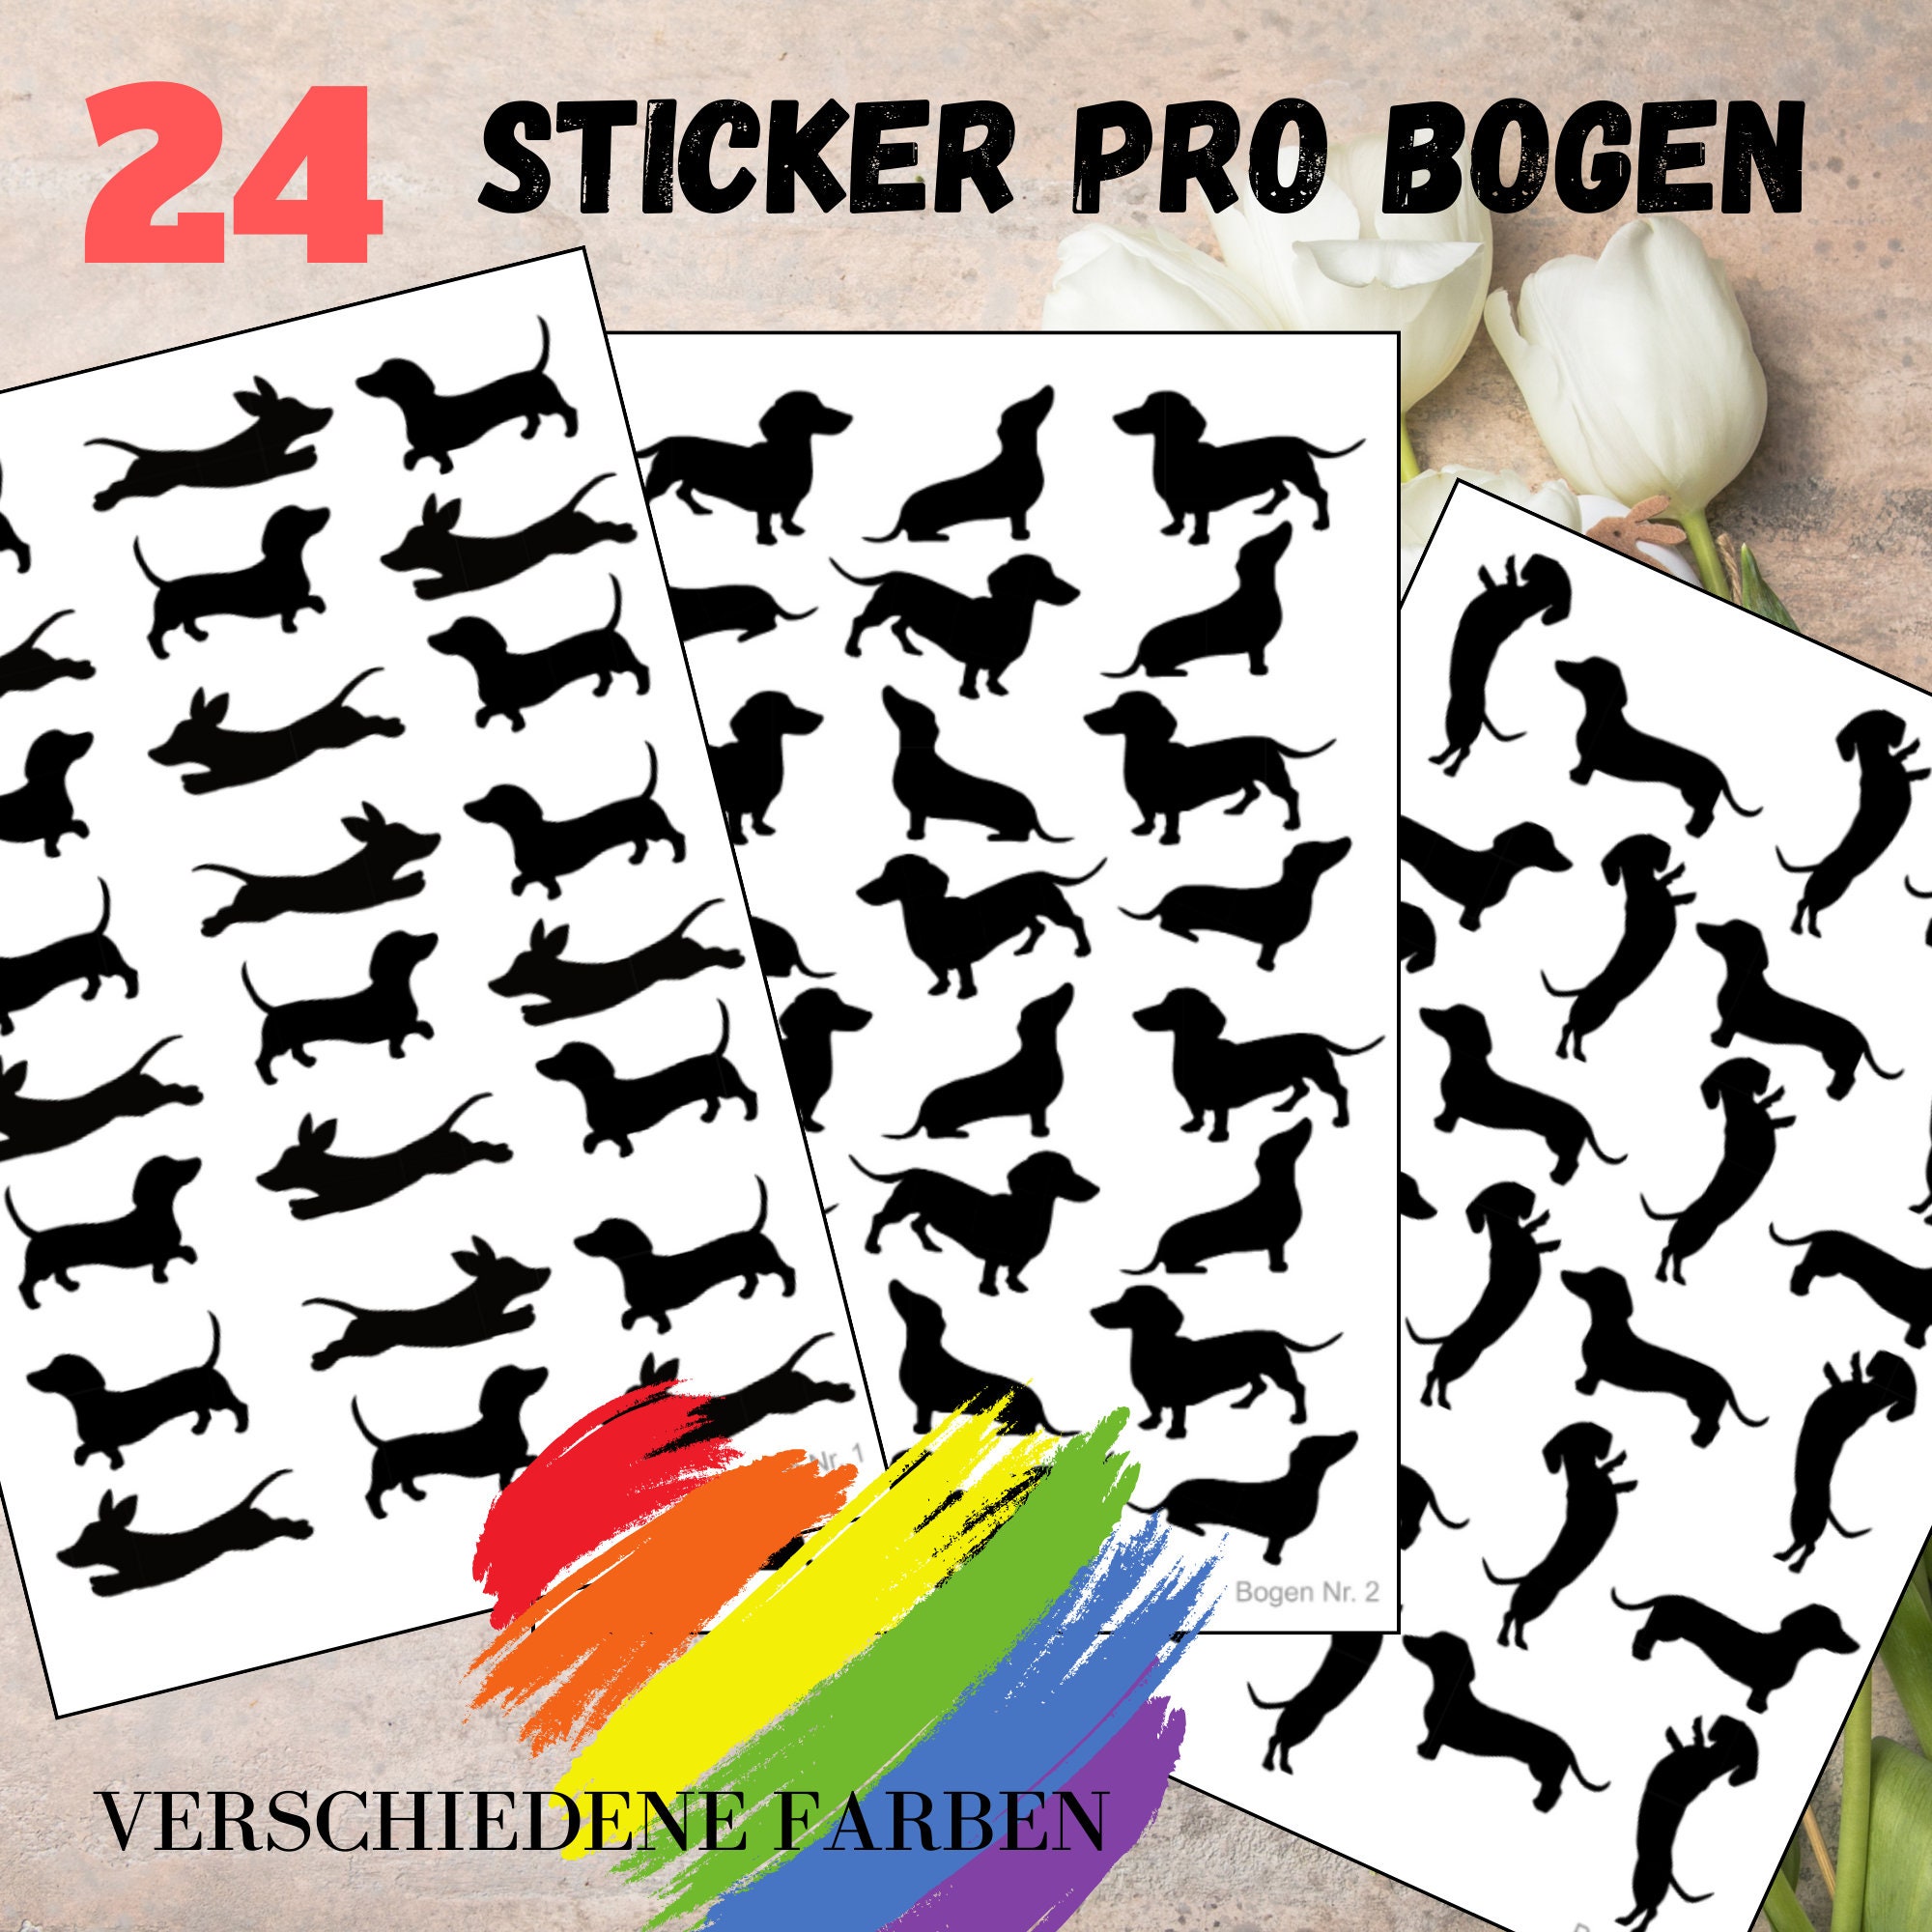 Sticker Bogen - Hund Dackel | 24 Sticker pro Bogen - Journal Sticker - Aufkleber 3 Stickerbogen zur Auswahl I Farbe wählbar